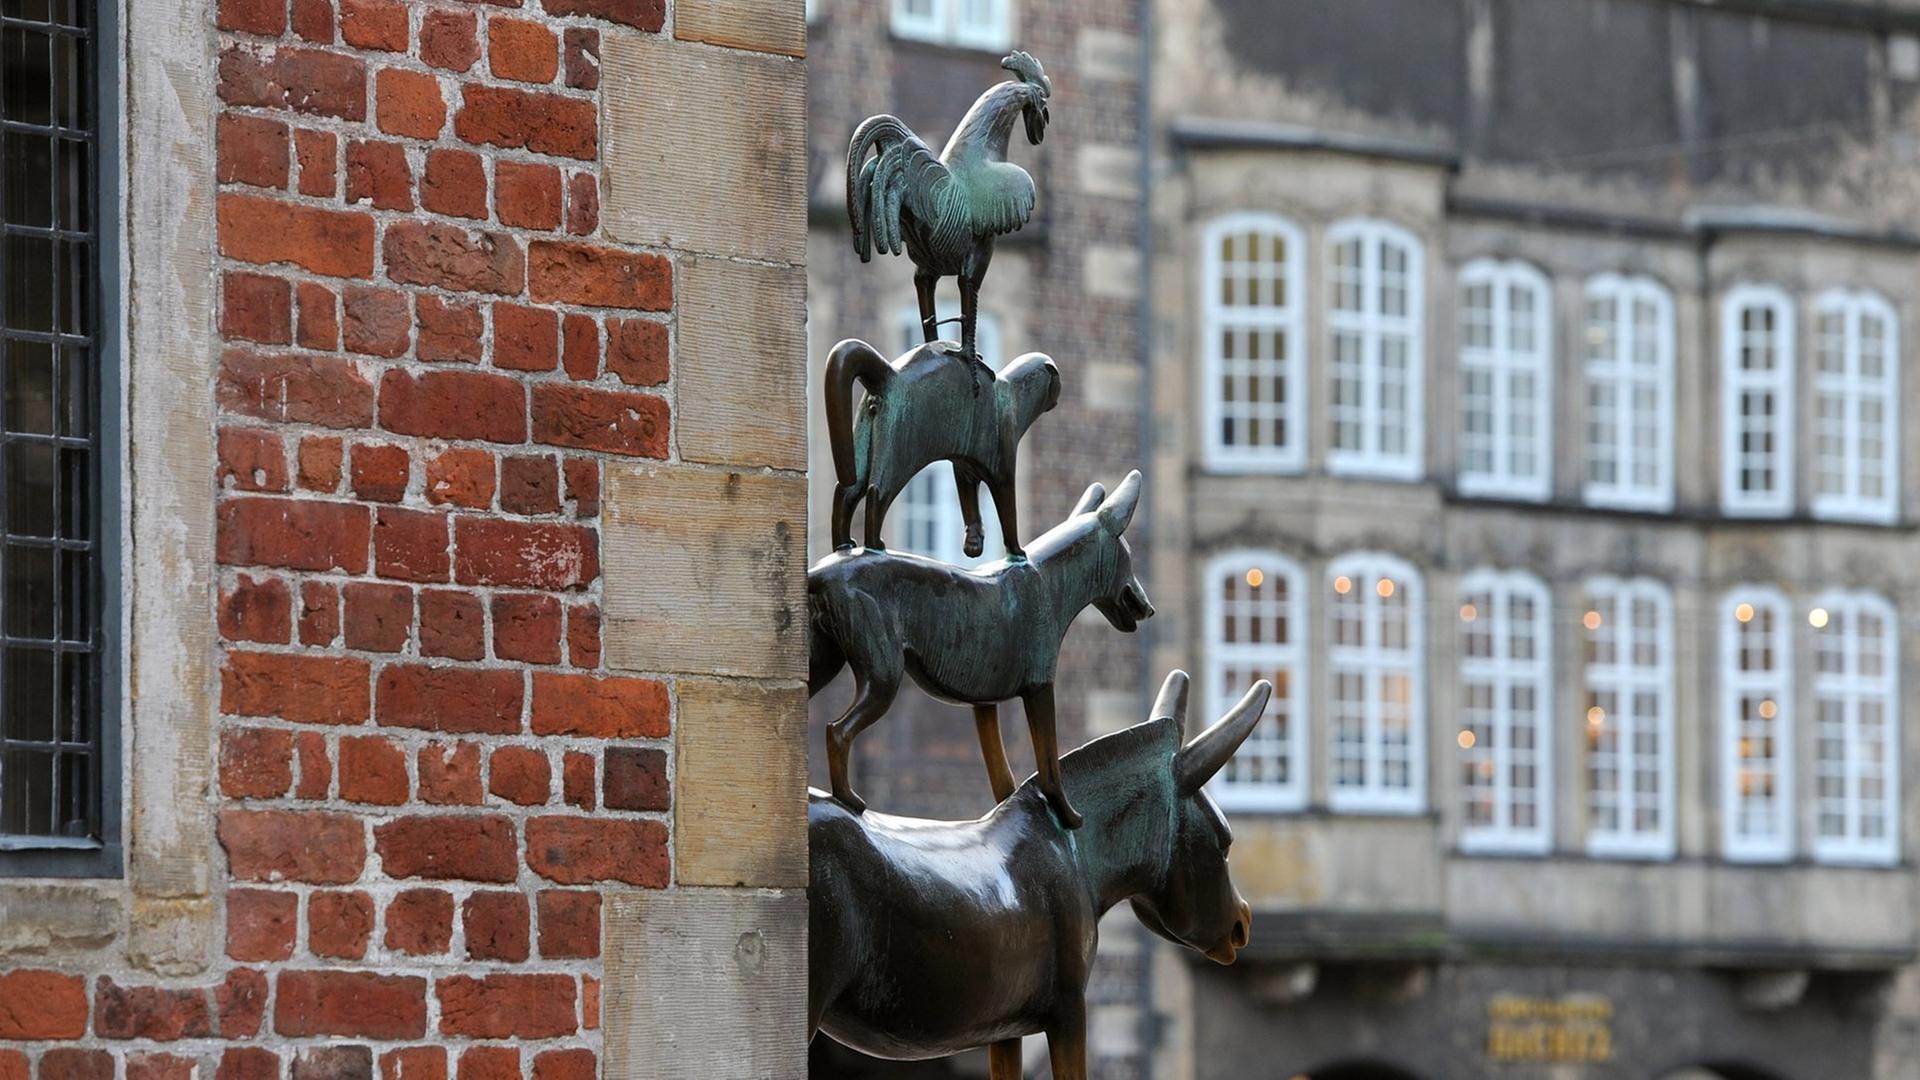 Die Bronzeplastik der "Bremer Stadtmusikanten" des Bildhauers Gerhard Marcks, am Rathaus von Bremen